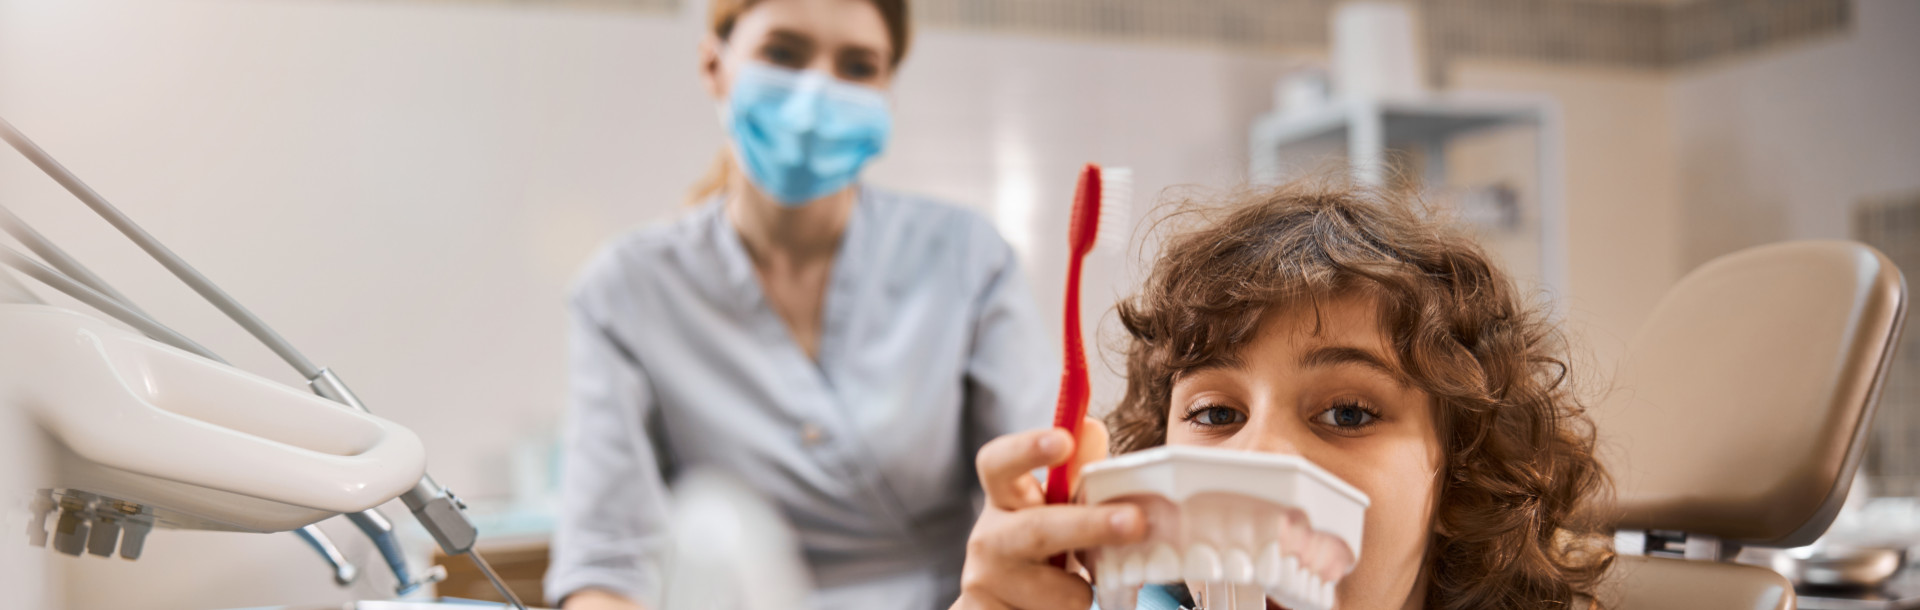 Antibióticos en la infancia y salud dental - Siegfried Rhein